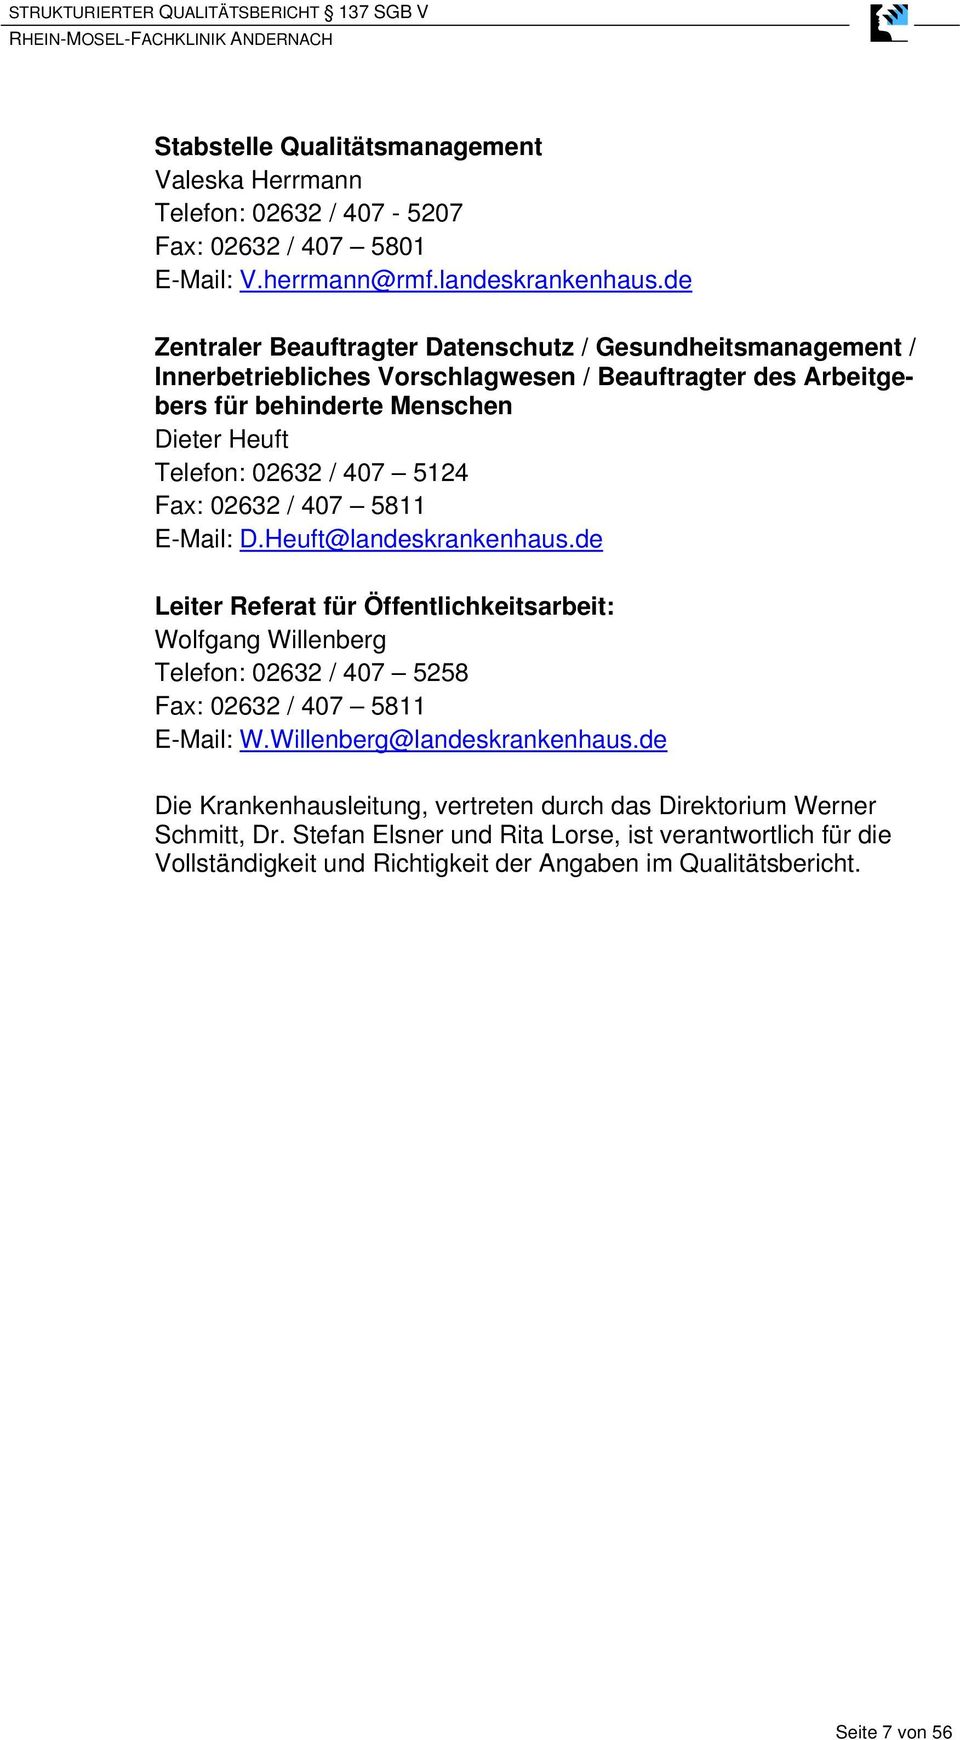 5124 Fax: 02632 / 407 5811 E-Mail: D.Heuft@landeskrankenhaus.de Leiter Referat für Öffentlichkeitsarbeit: Wolfgang Willenberg Telefon: 02632 / 407 5258 Fax: 02632 / 407 5811 E-Mail: W.